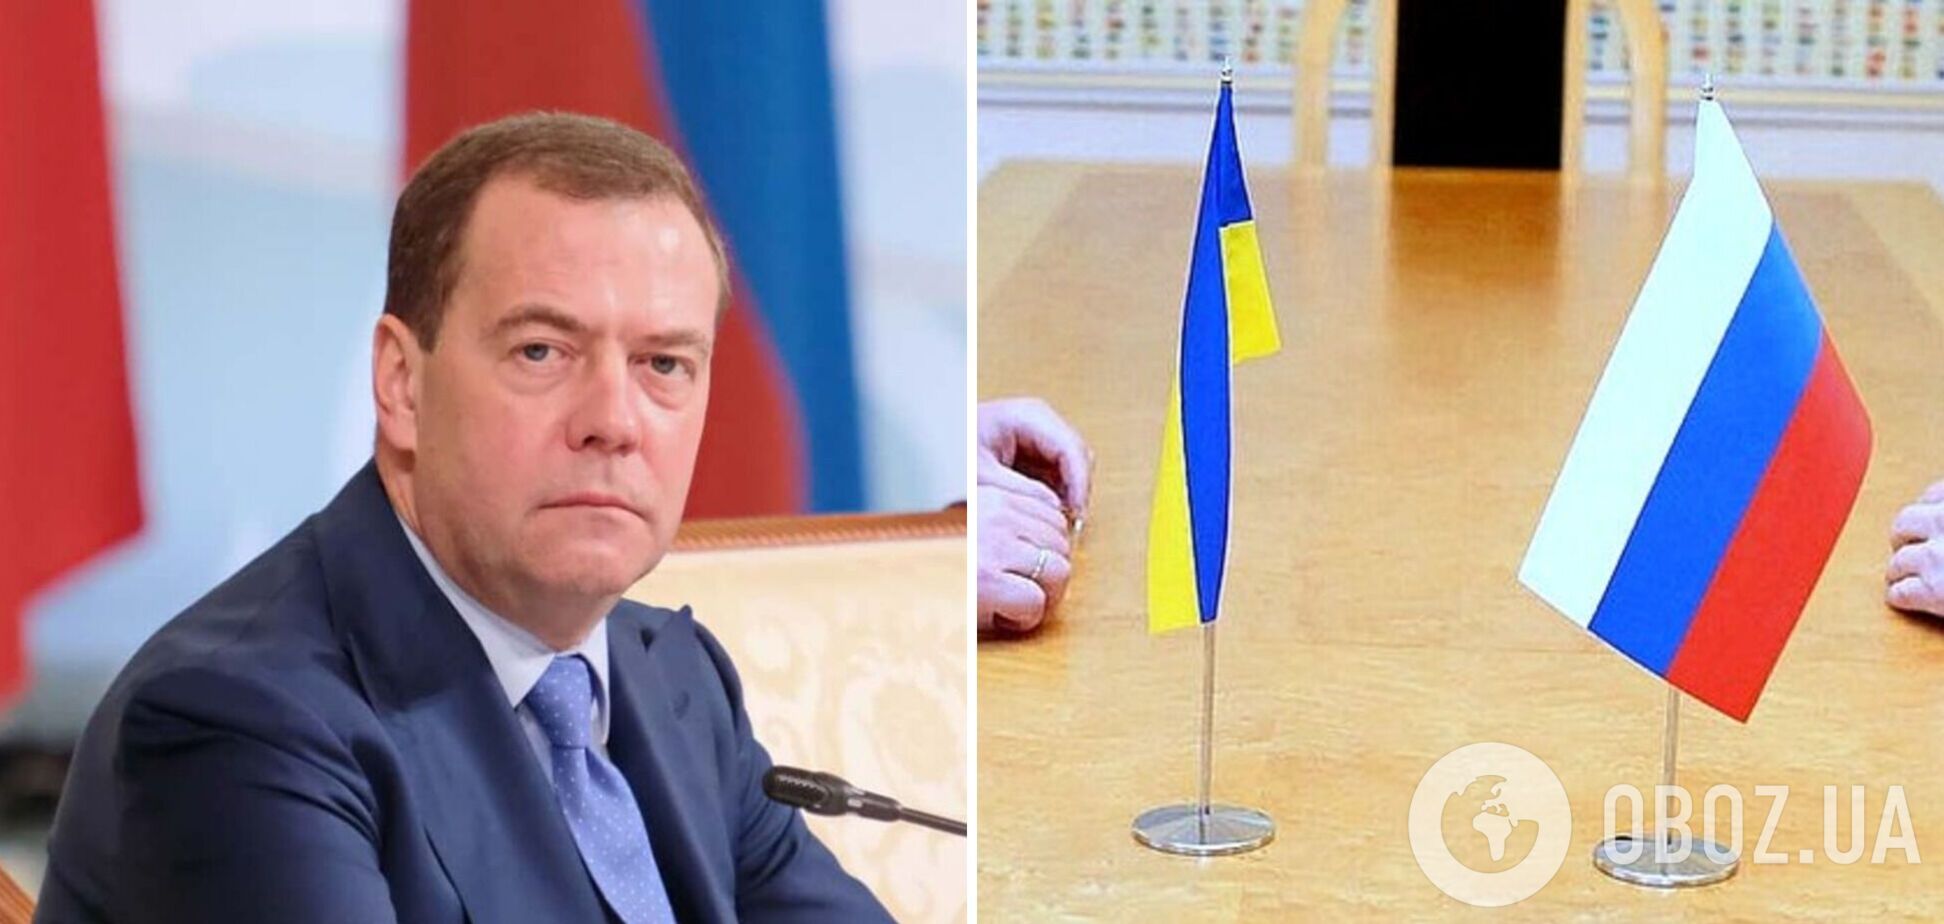 'Как минимум': Медведев попытался предъявить требования к Украине для переговоров